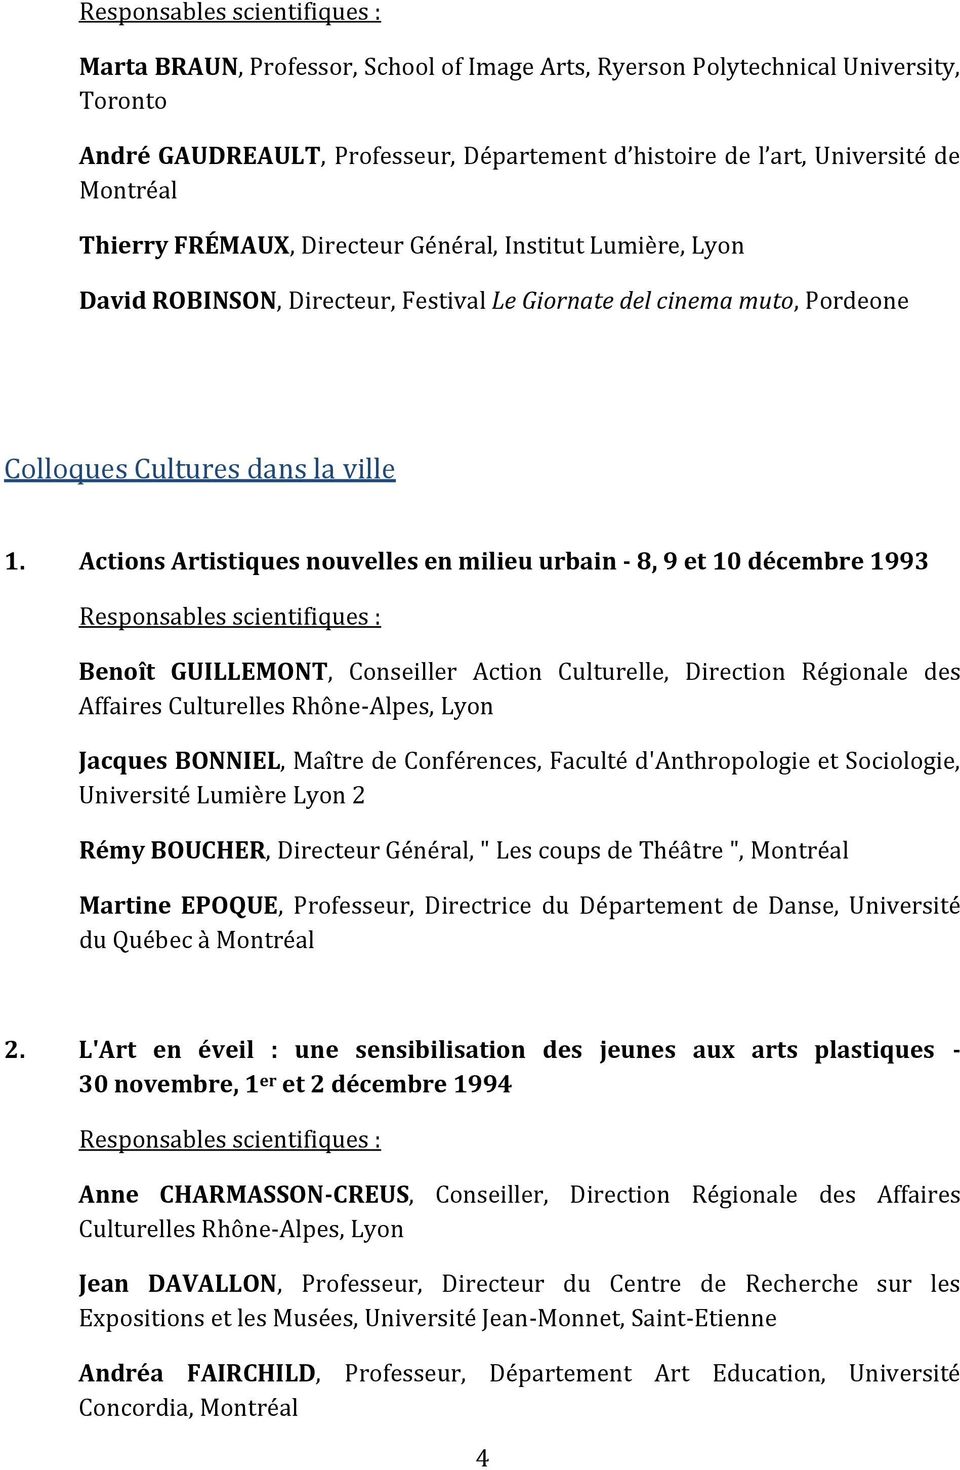 Actions Artistiques nouvelles en milieu urbain - 8, 9 et 10 décembre 1993 Benoît GUILLEMONT, Conseiller Action Culturelle, Direction Régionale des Affaires Culturelles Rhône-Alpes, Lyon Jacques